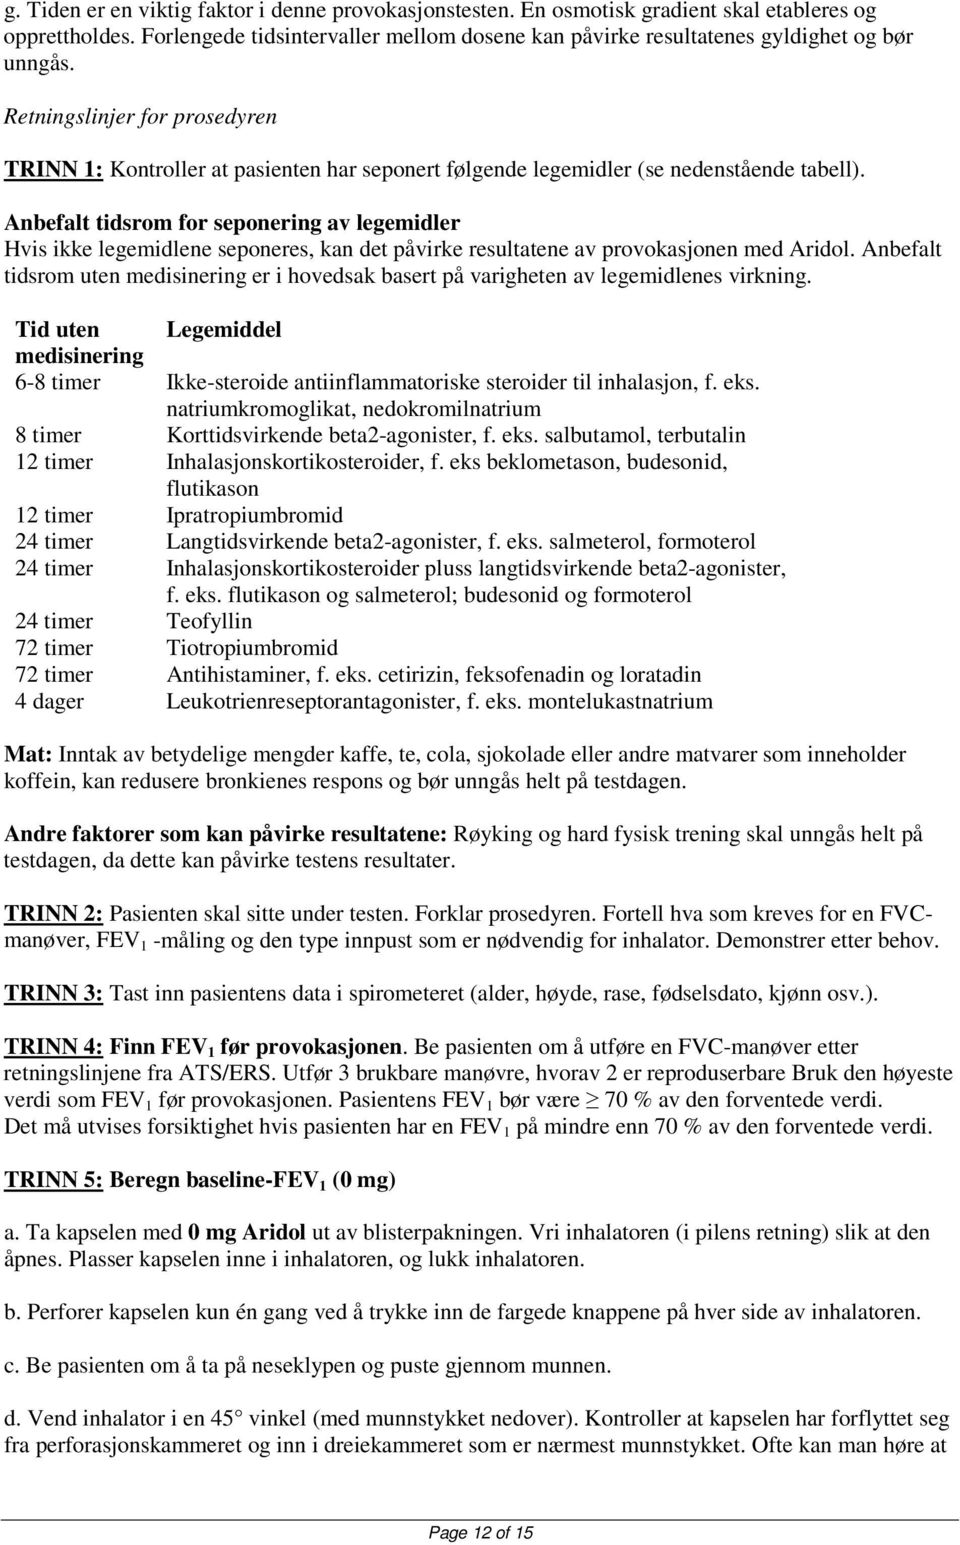 Retningslinjer for prosedyren TRINN 1: Kontroller at pasienten har seponert følgende legemidler (se nedenstående tabell).